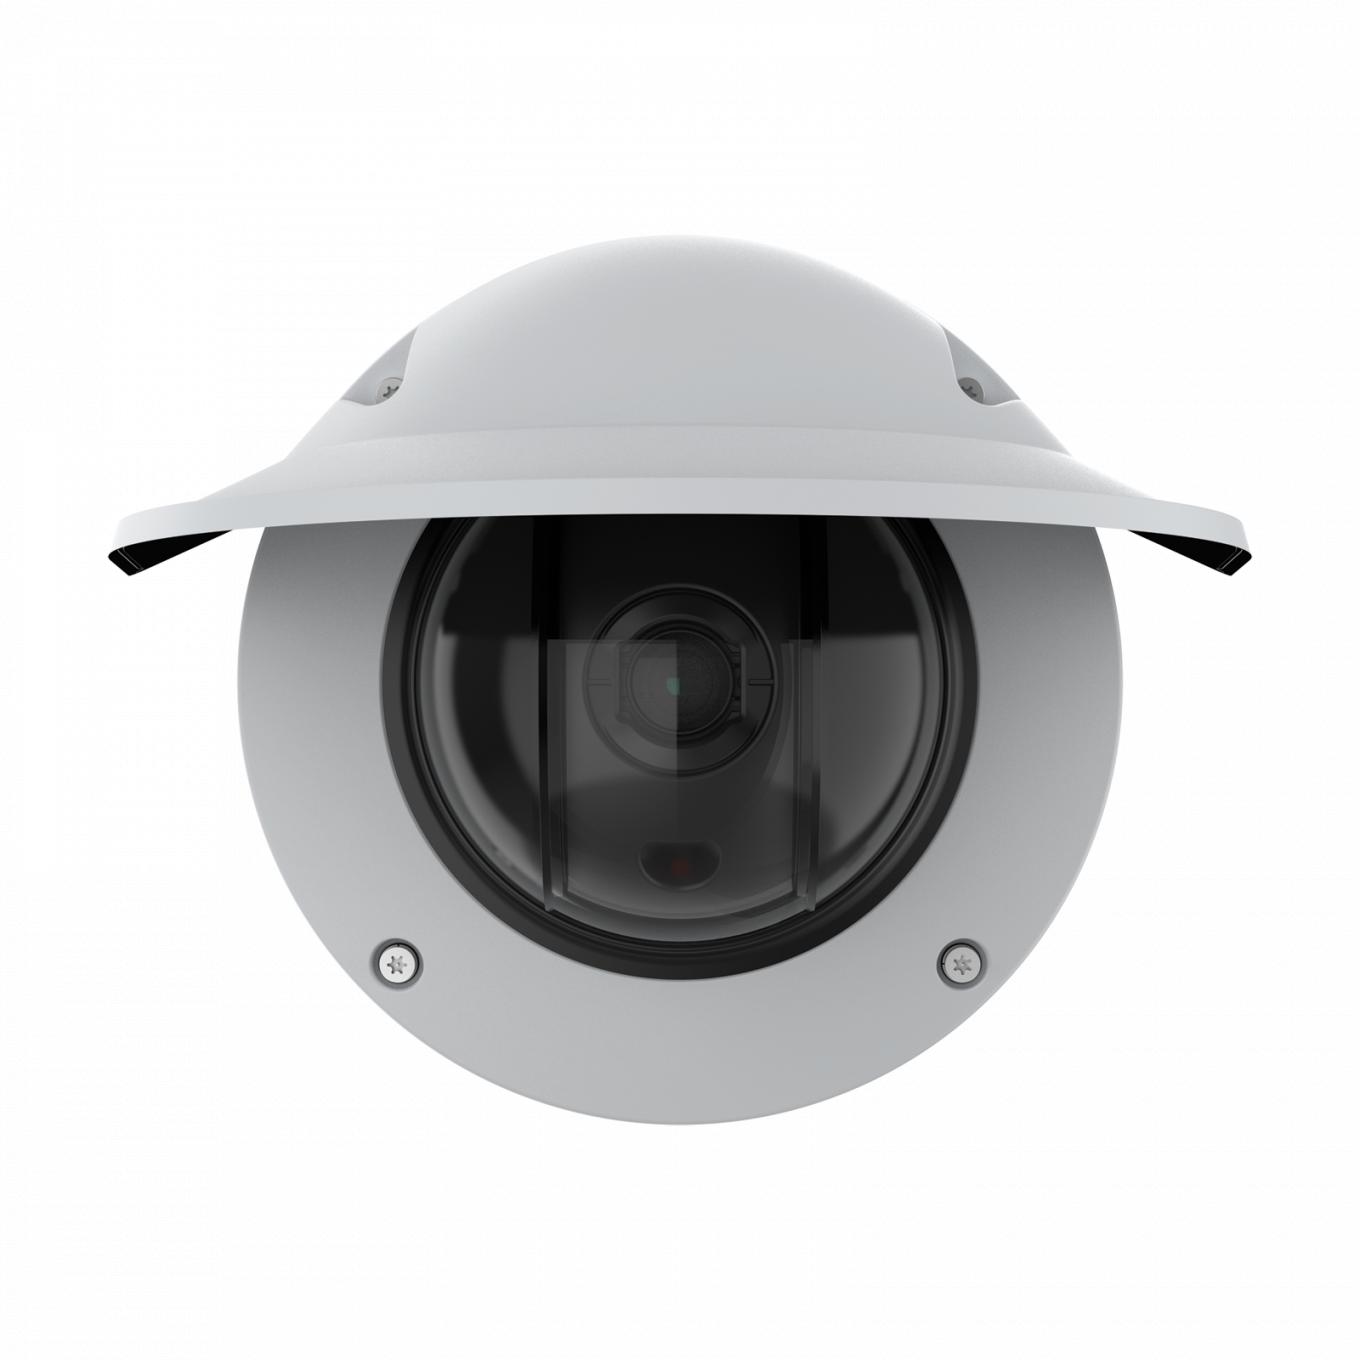 AXIS Q3536-LVE Dome Camera avec protection étanche, vue de face